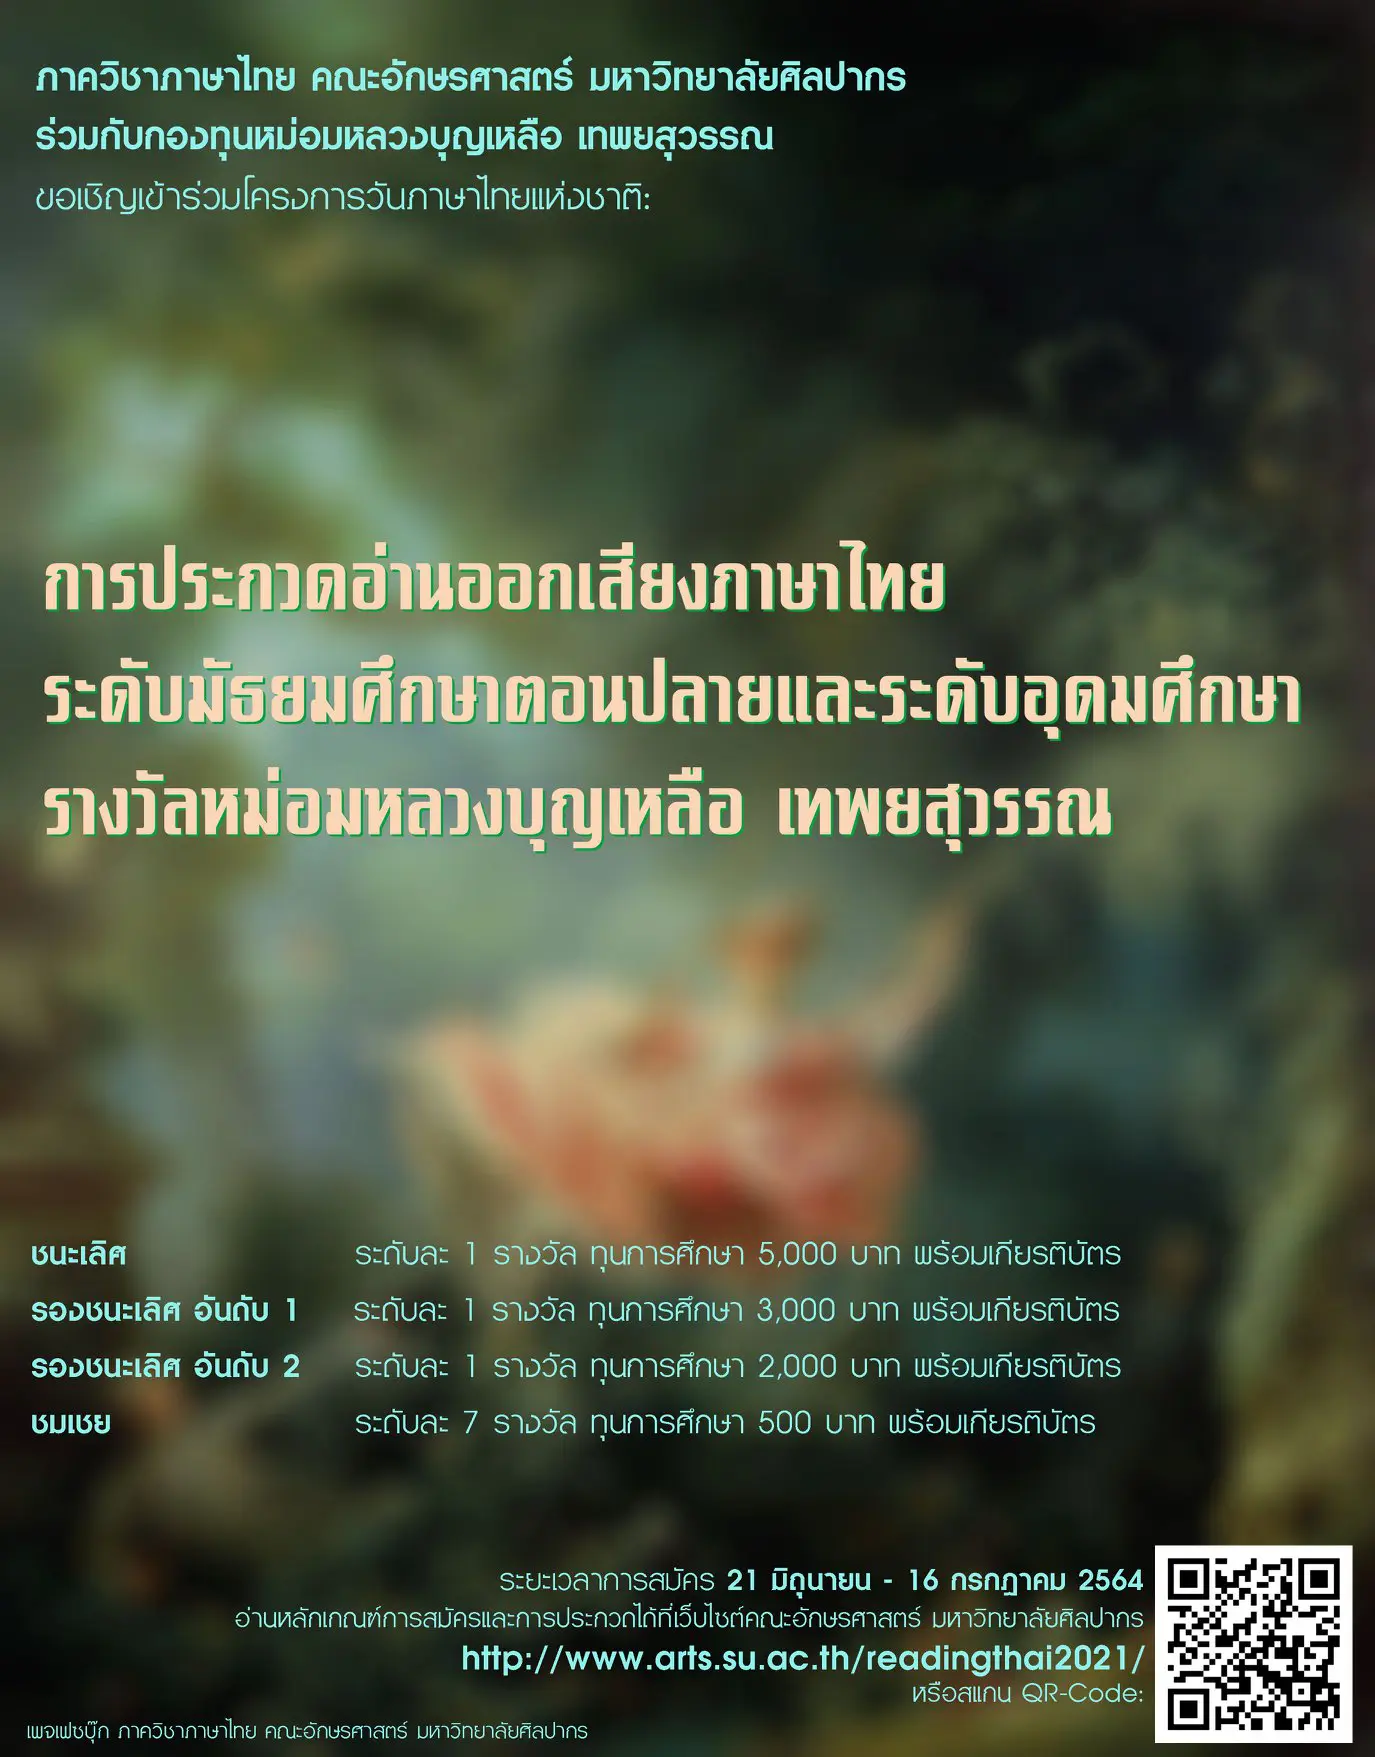 มหาวิทยาลัยศิลปากร เชิญชวนนักเรียน ม.ปลาย - ป.ตรี ประกวดอ่านออกเสียงภาษาไทย รางวัลหม่อมหลวงบุญเหลือ เทพยสุวรรณ เนื่องในวันภาษาไทยแห่งชาติ 2564 สมัครถึง 16 กรกฎาคม 2564